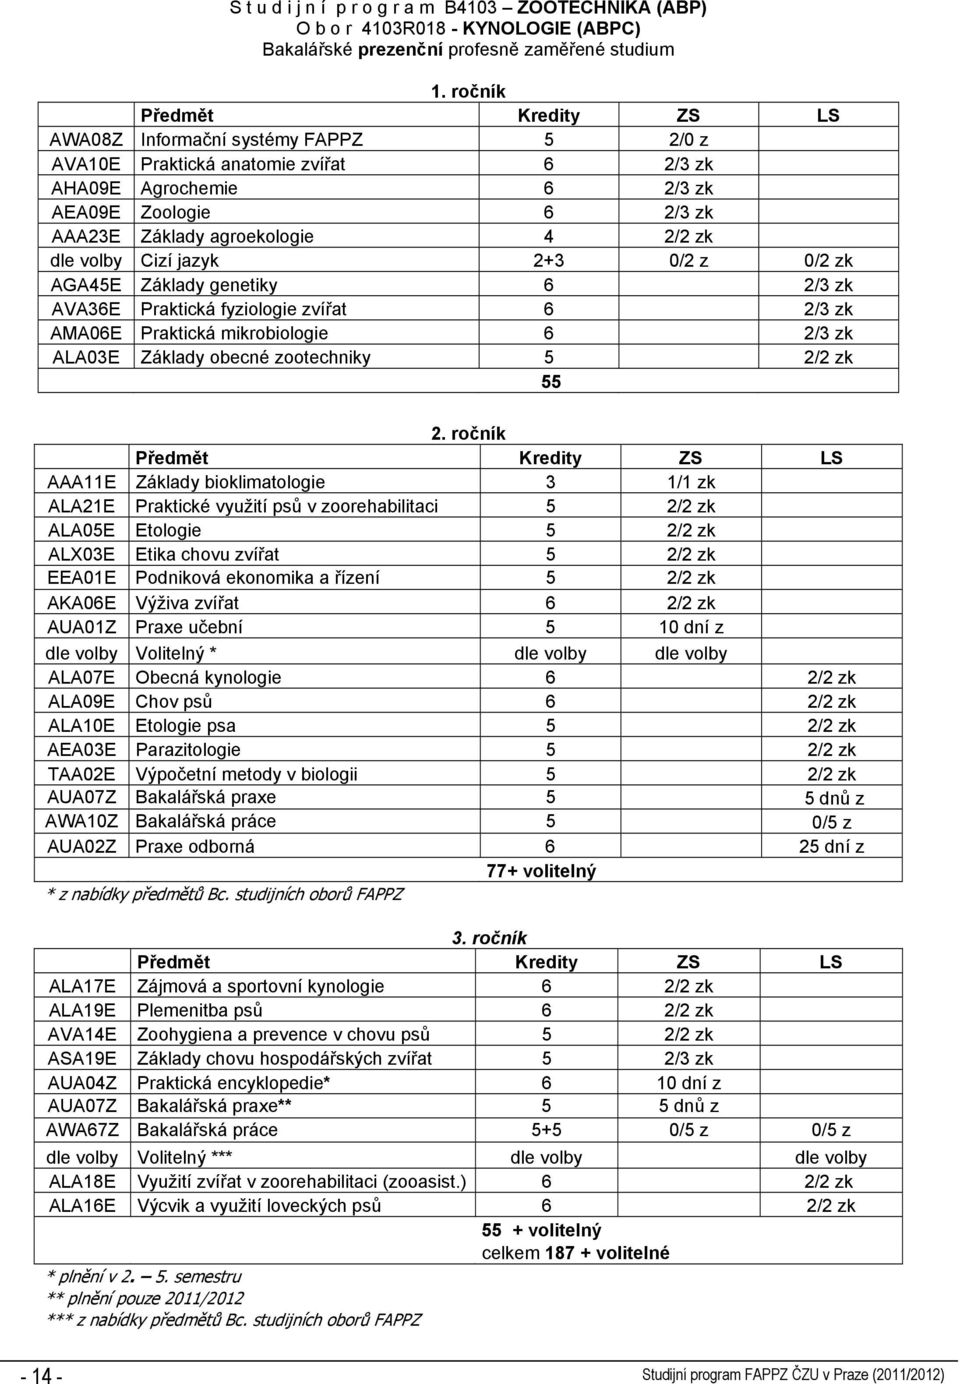 2+3 0/2 z 0/2 zk AGA45E Základy genetiky 6 2/3 zk AVA36E Praktická fyziologie zvířat 6 2/3 zk AMA06E Praktická mikrobiologie 6 2/3 zk ALA03E Základy obecné zootechniky 5 2/2 zk 55 2.